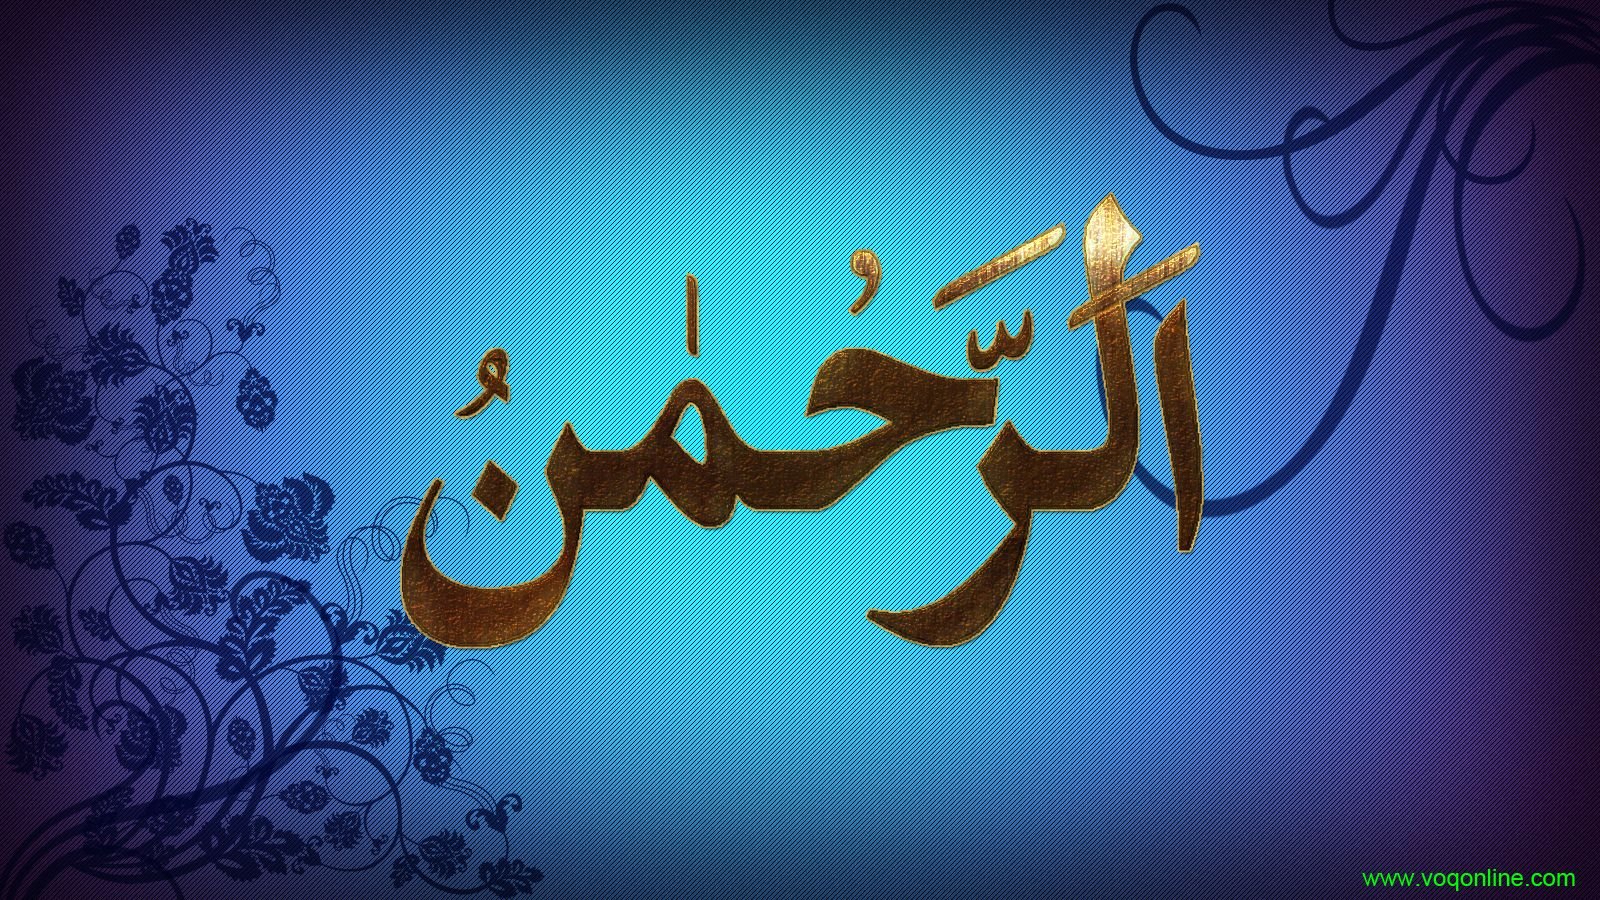 Арабский язык поздравления. Исламские картинки. Пожелания на арабском. Красивые арабские картины. Счастье на мусульманском языке.